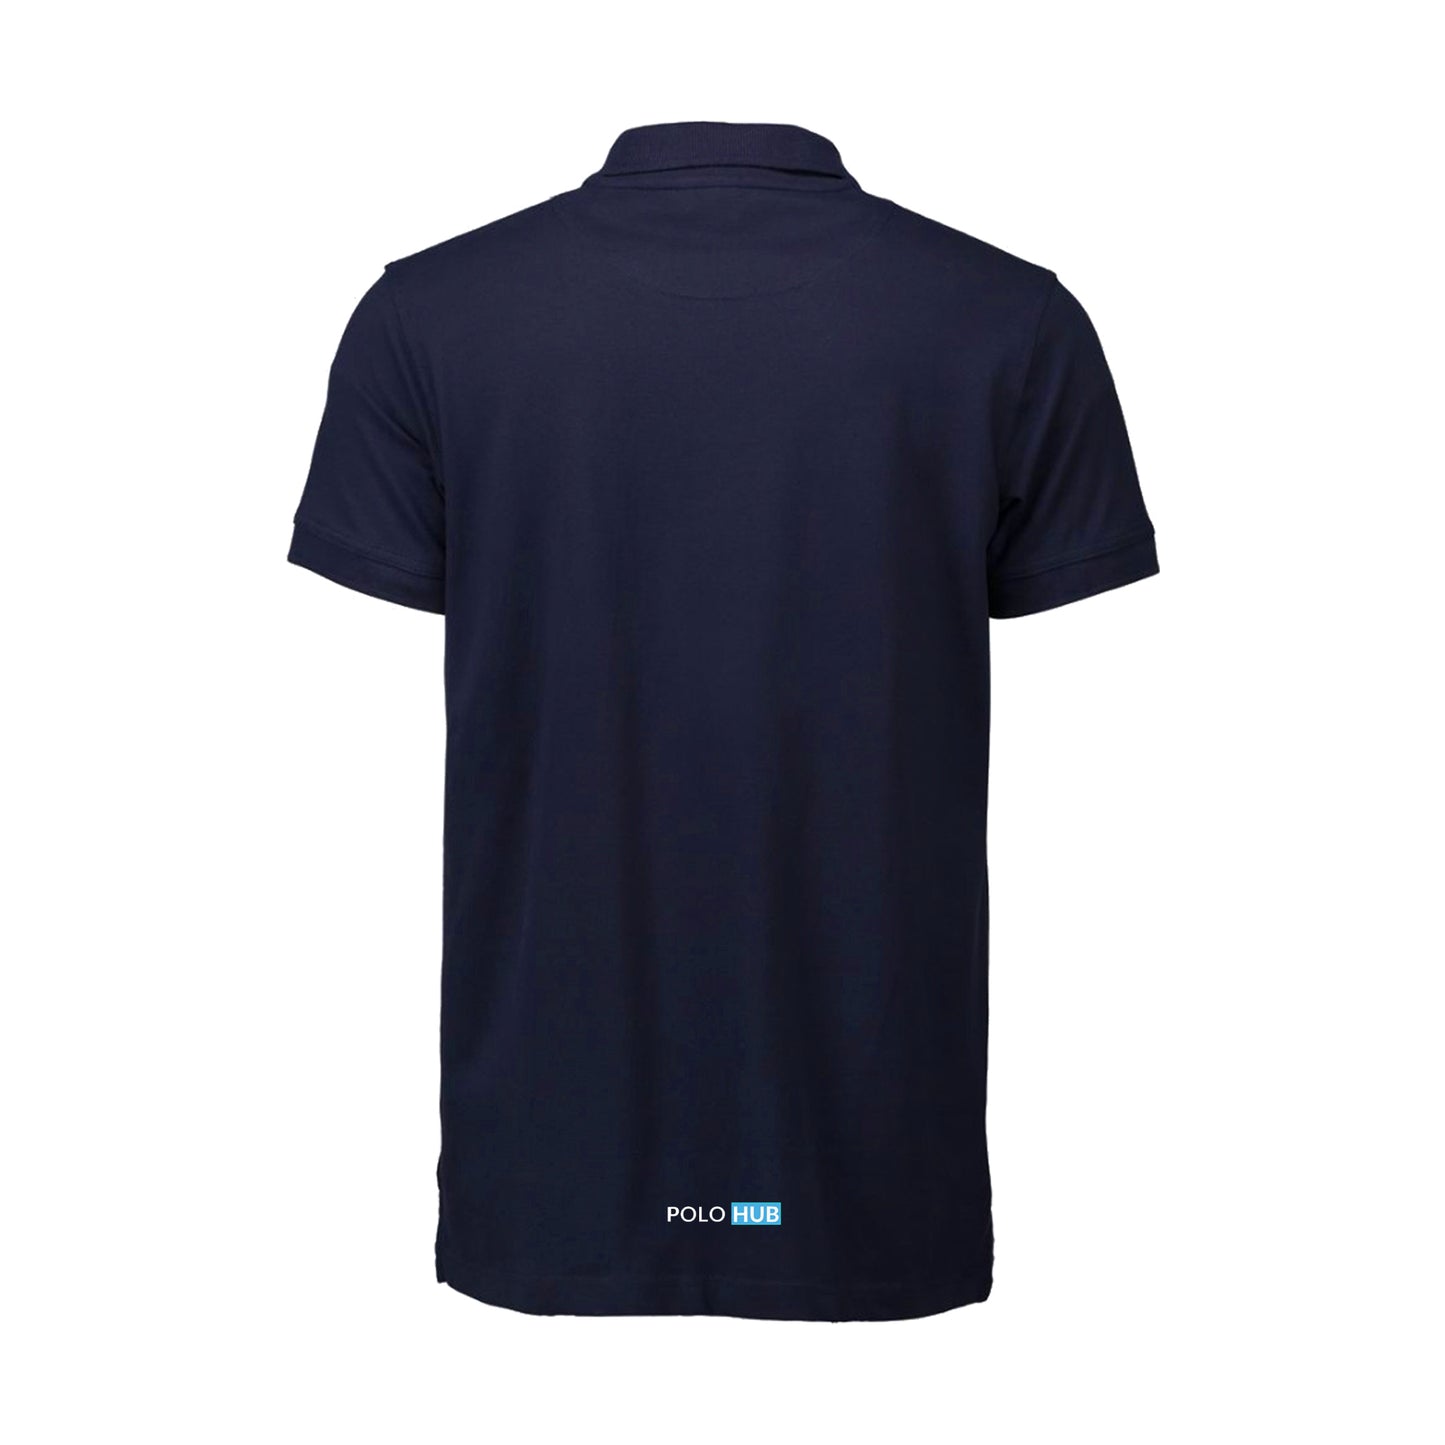 Saint-Tropez Polo Shirt - Men